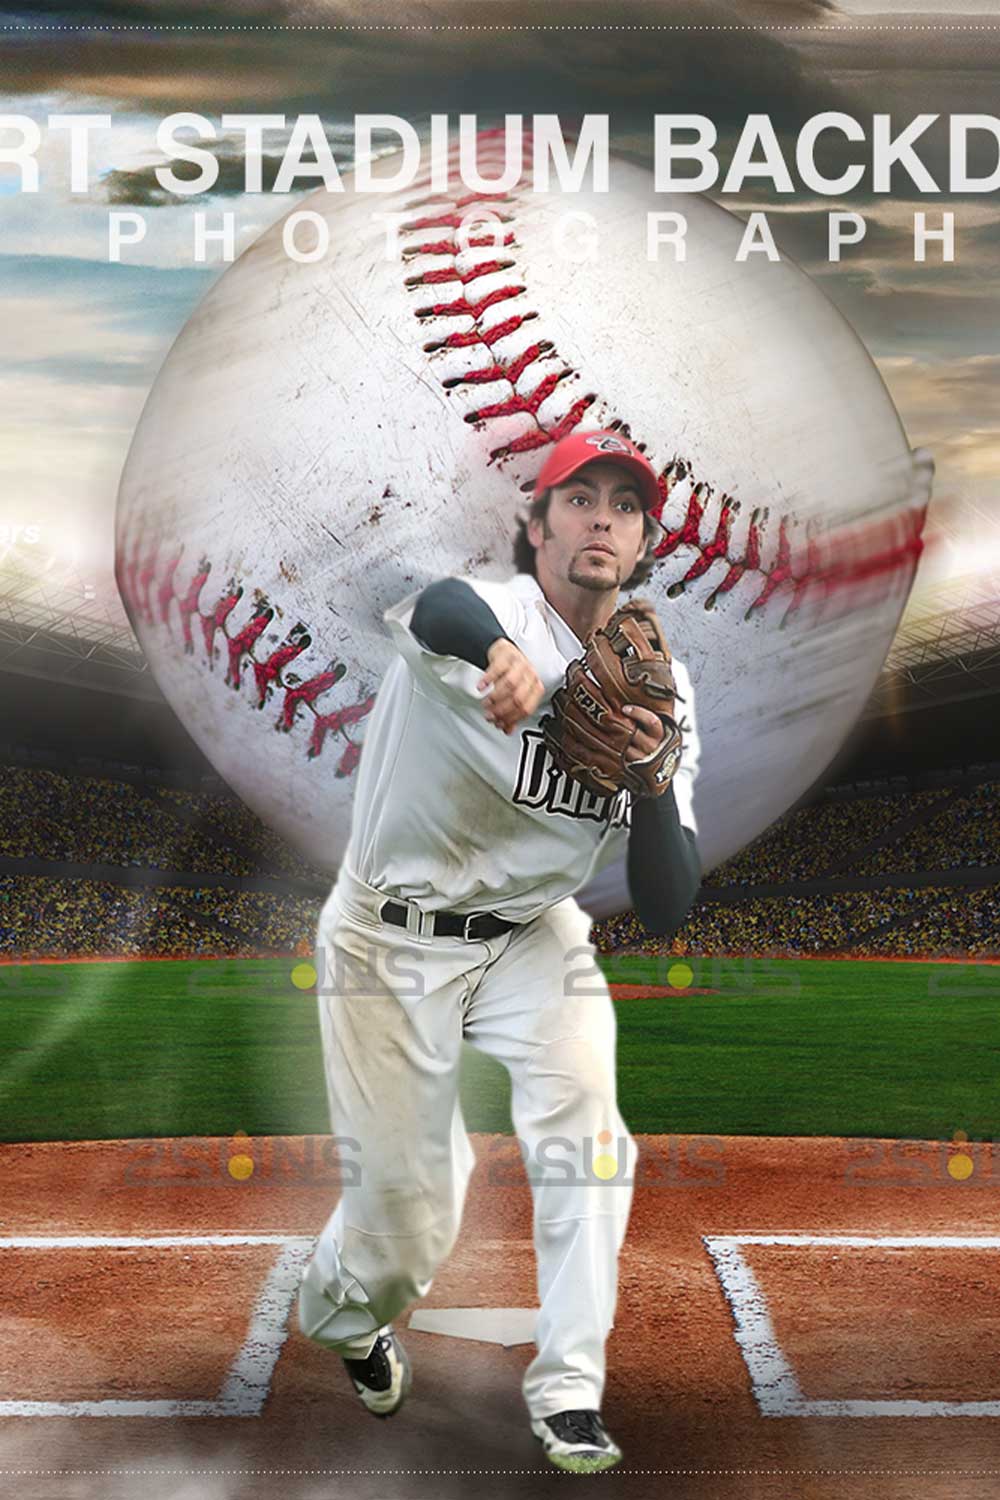 Sports Baseball Backdrop Digital Photoshop Background Overlay Pinterest Image.